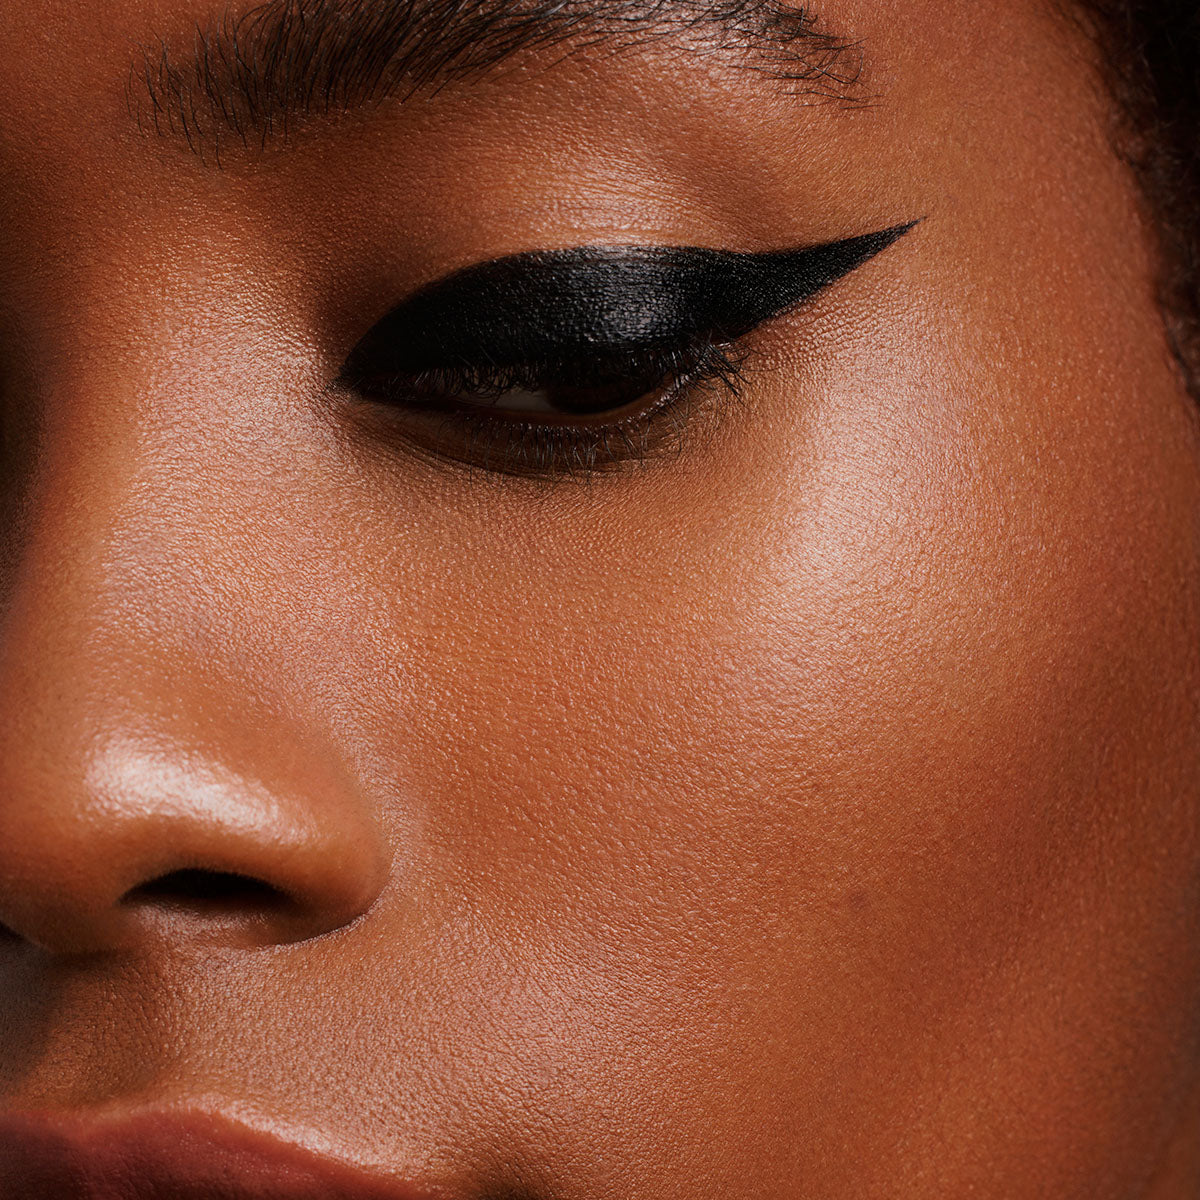 CHAT NOIR - INKY BLACK - black liquid refillable eyeliner on model